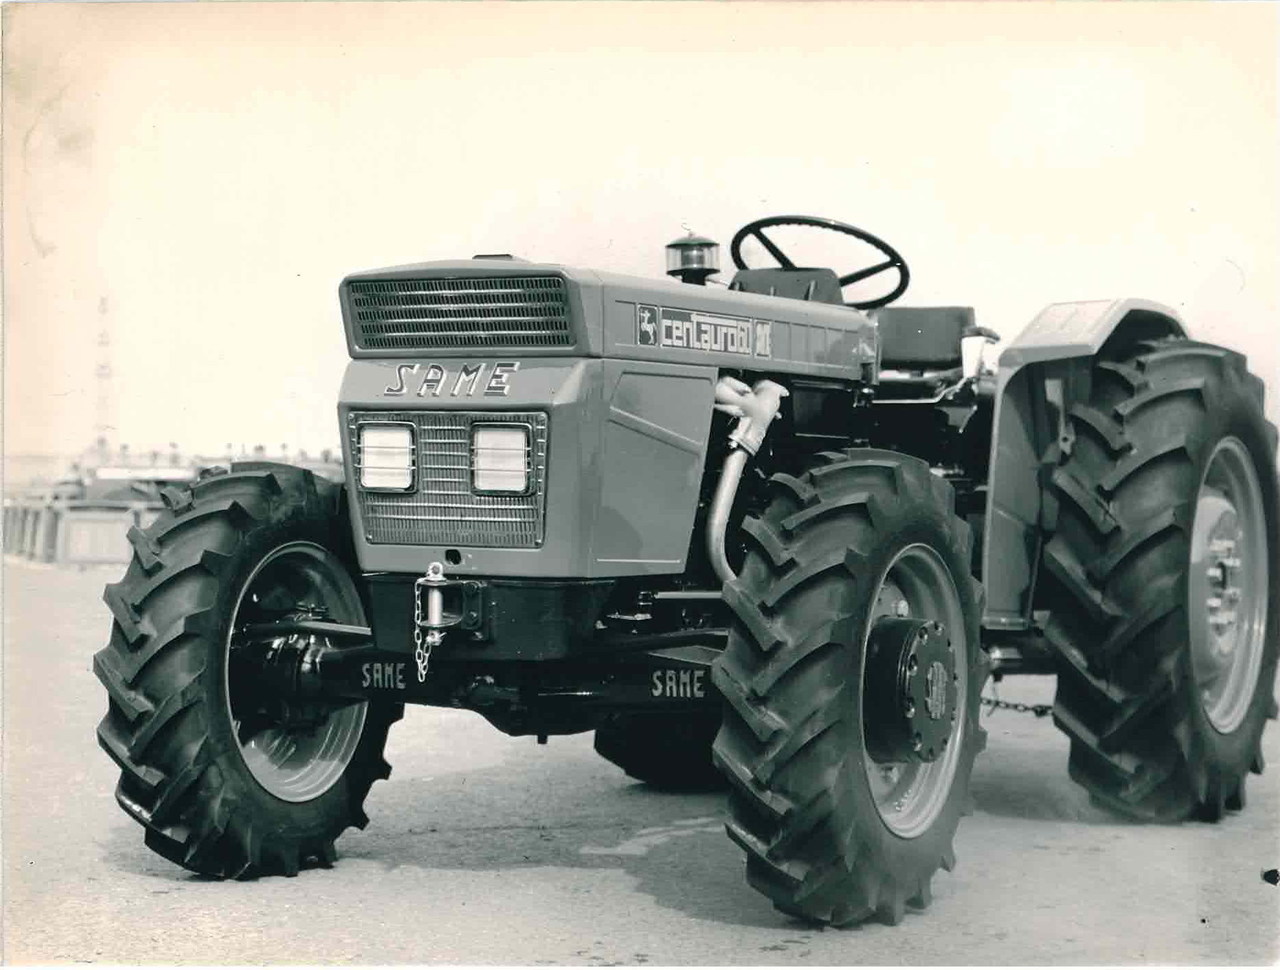 SAME Centauro 60 Traktor mit Allradantrieb (Quelle: SDF Archiv)